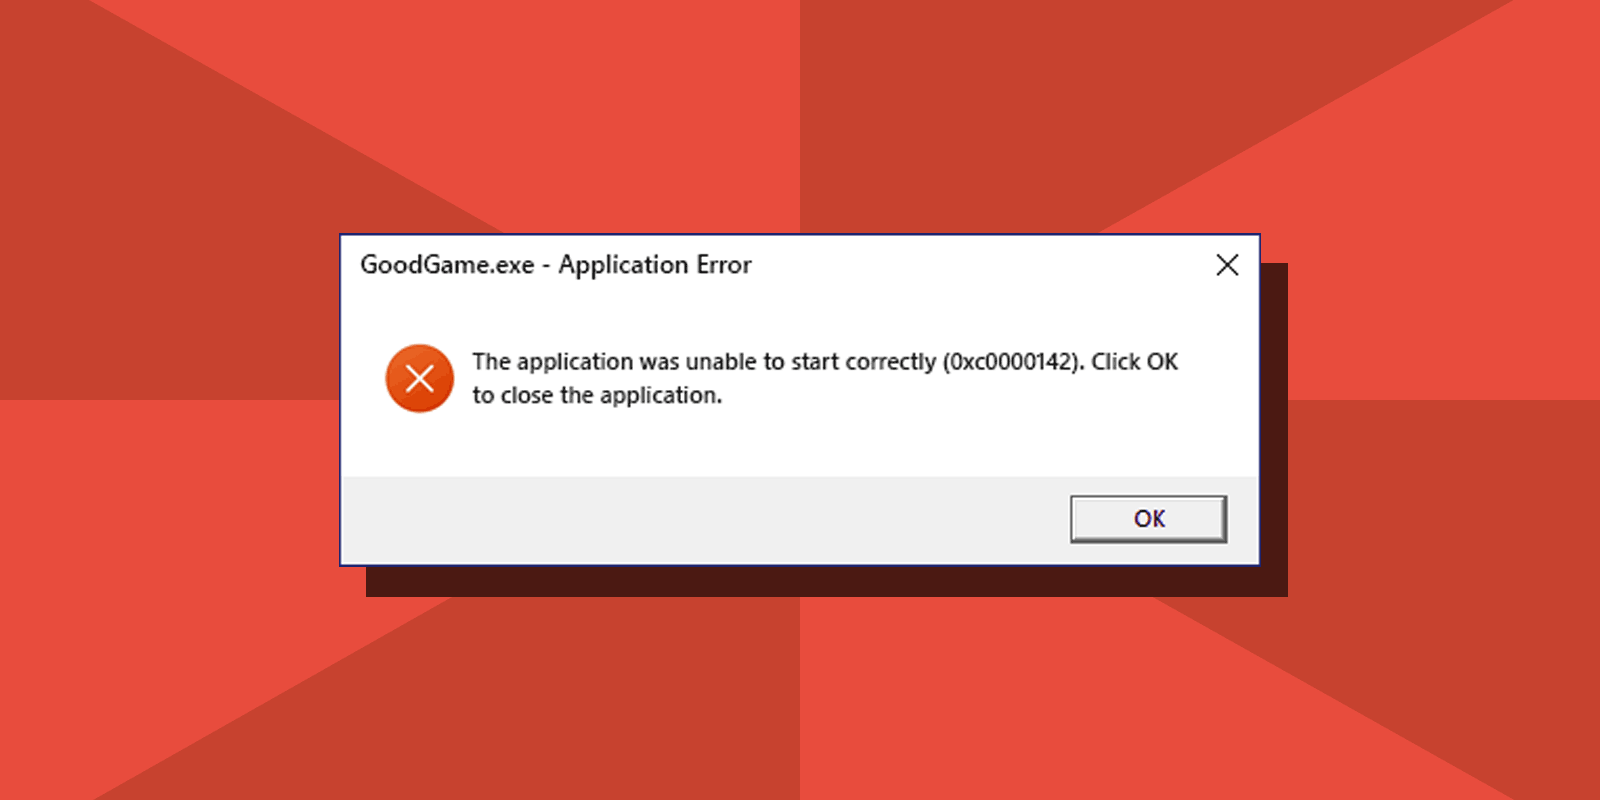 Fix Application Error 0xc0000142